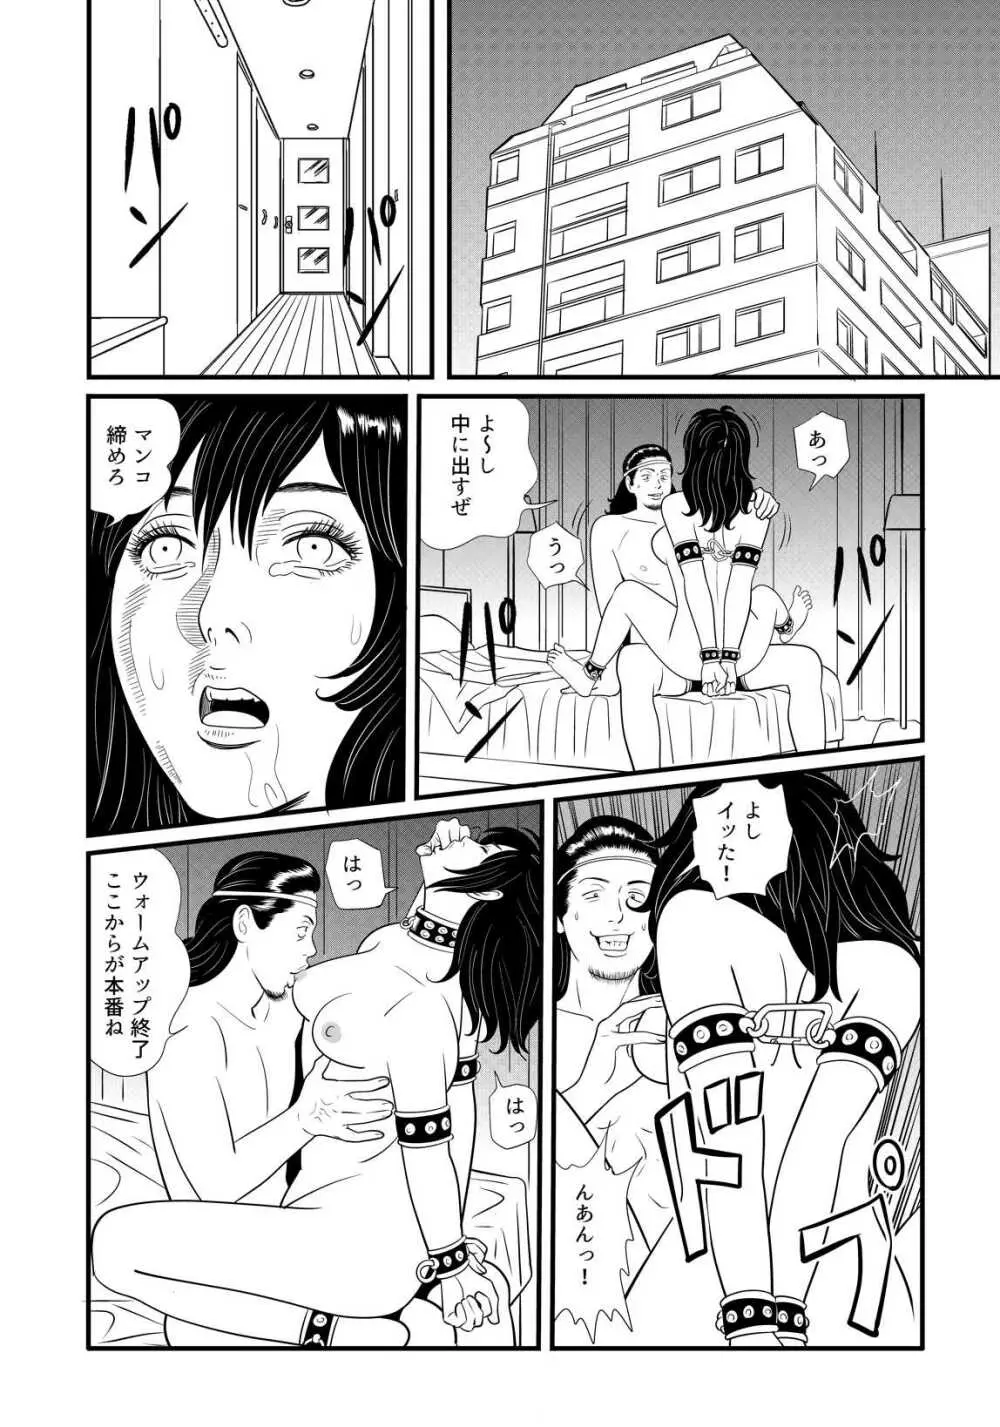 SLAVE_01 中間まとめ - page2